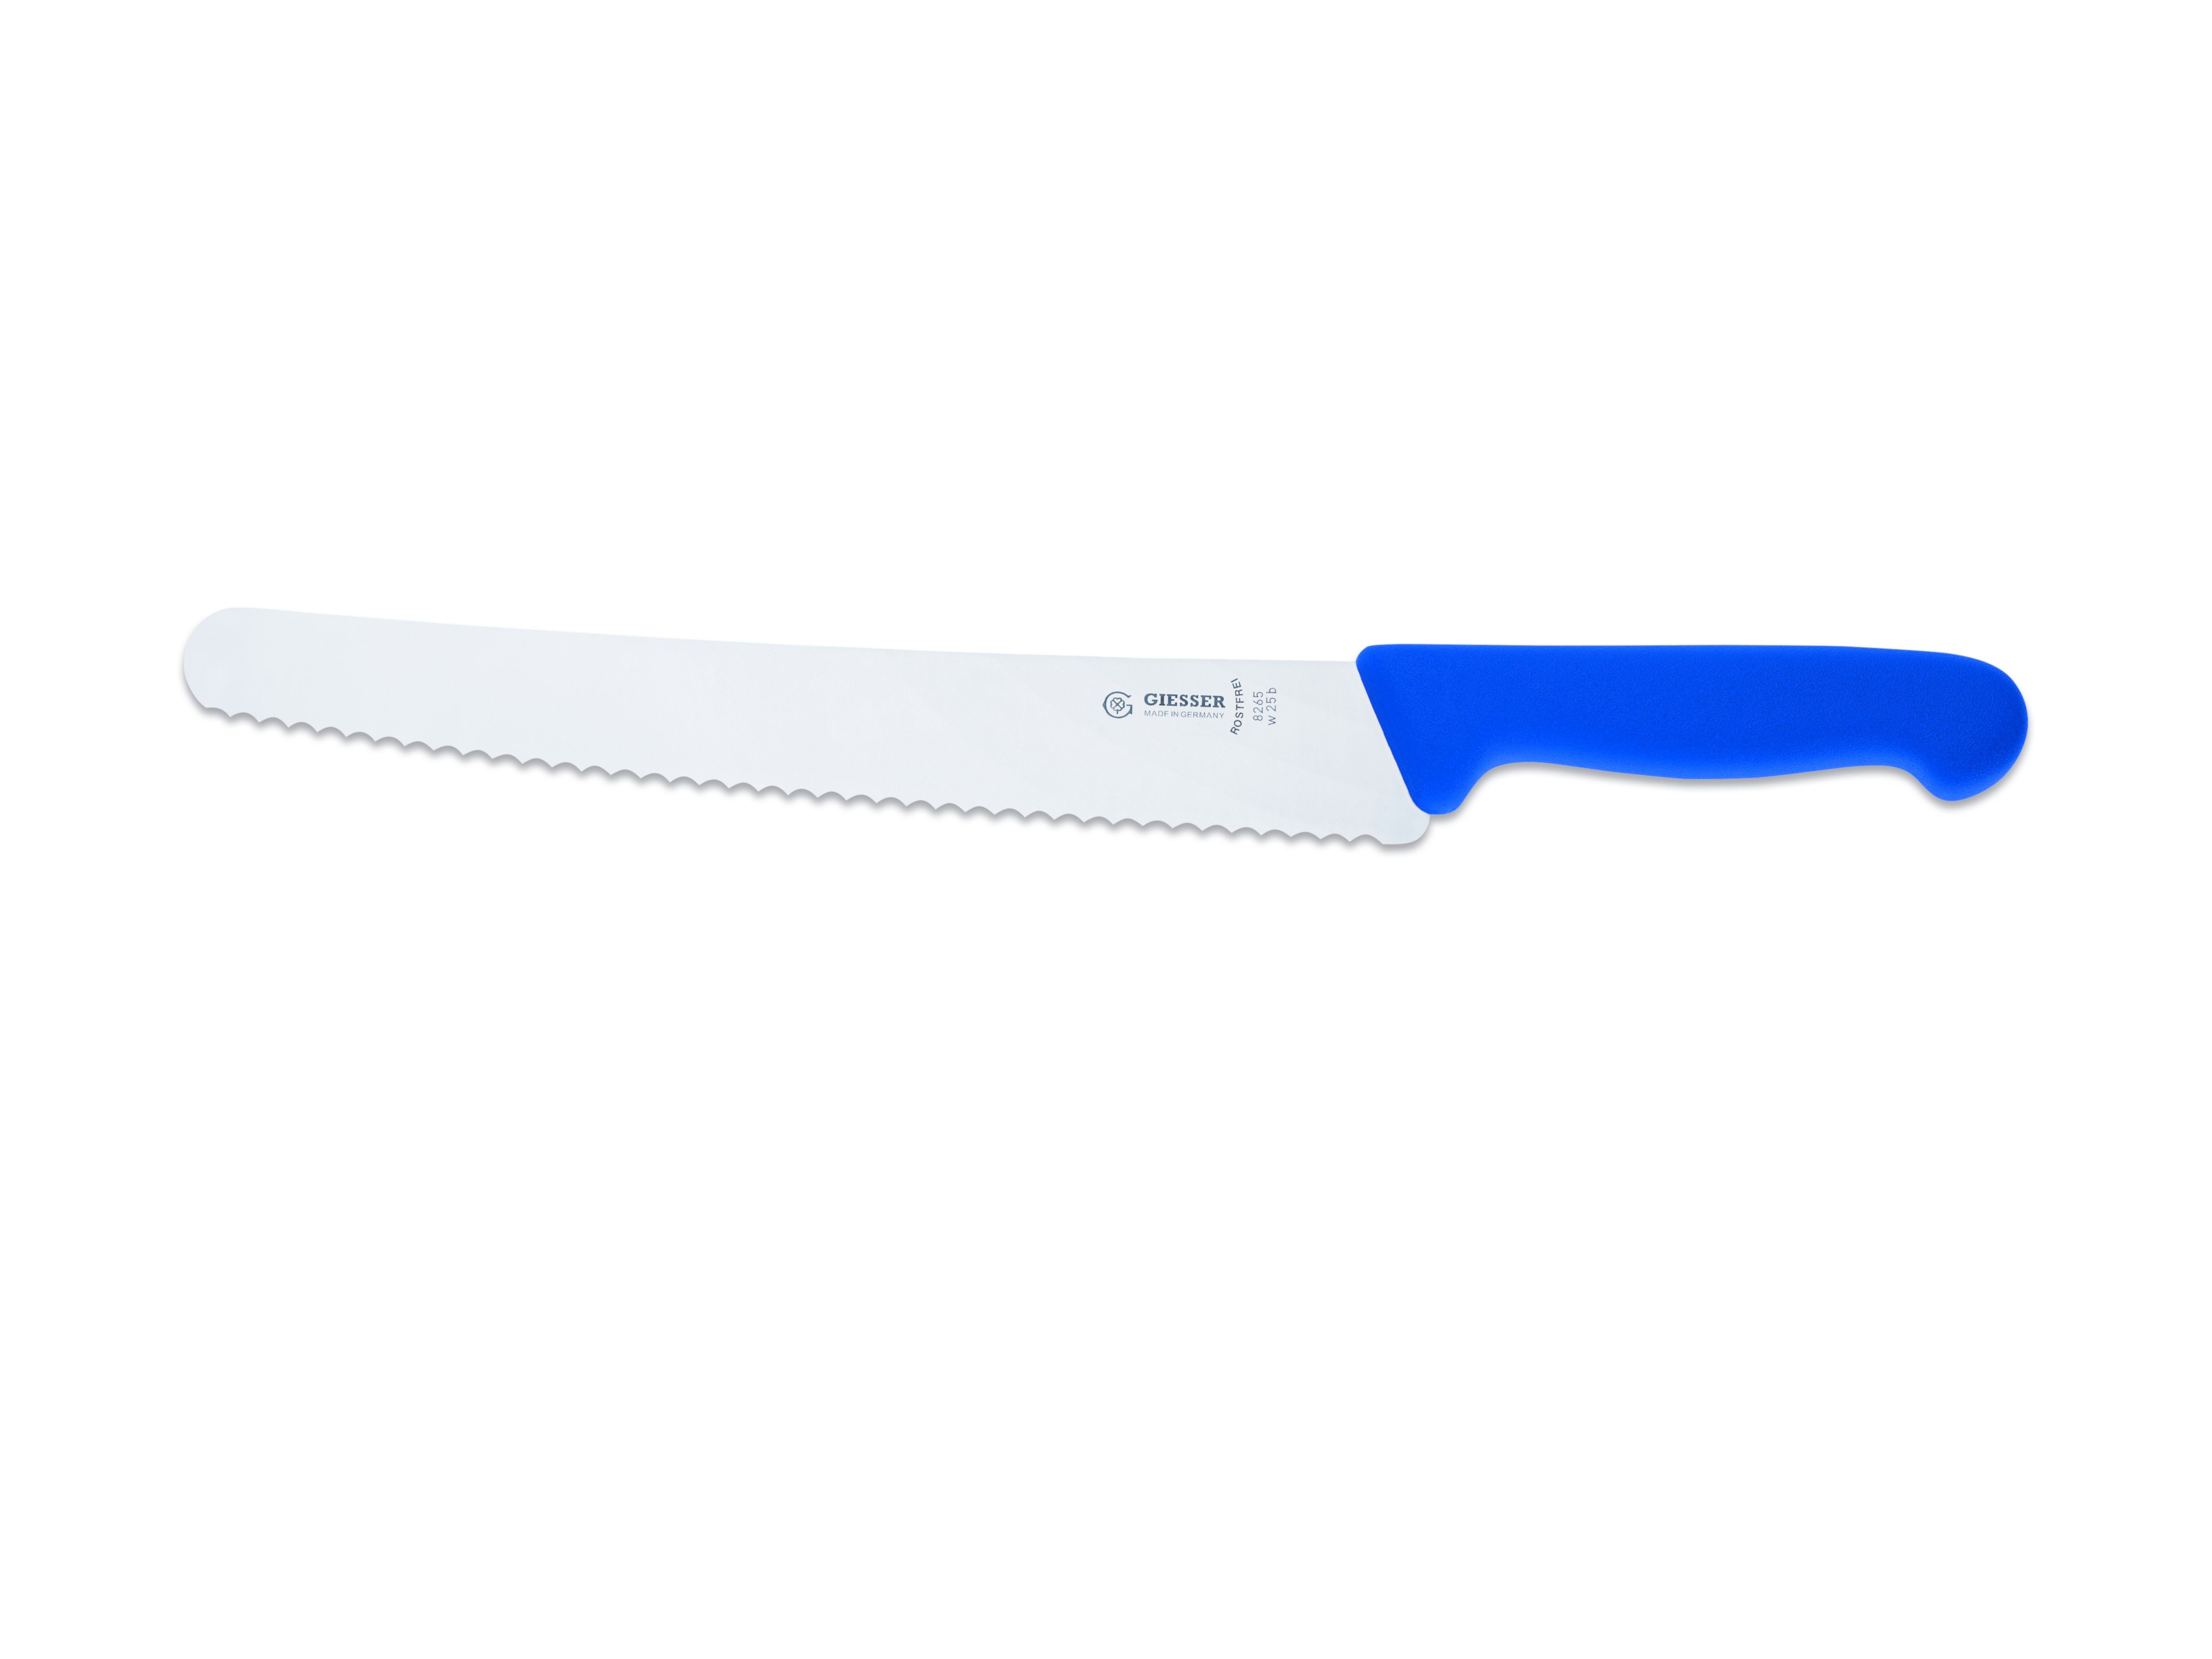 blau Brotmesser kunststoffgespritzt Messer 8265 Universalmesser Giesser 25, w